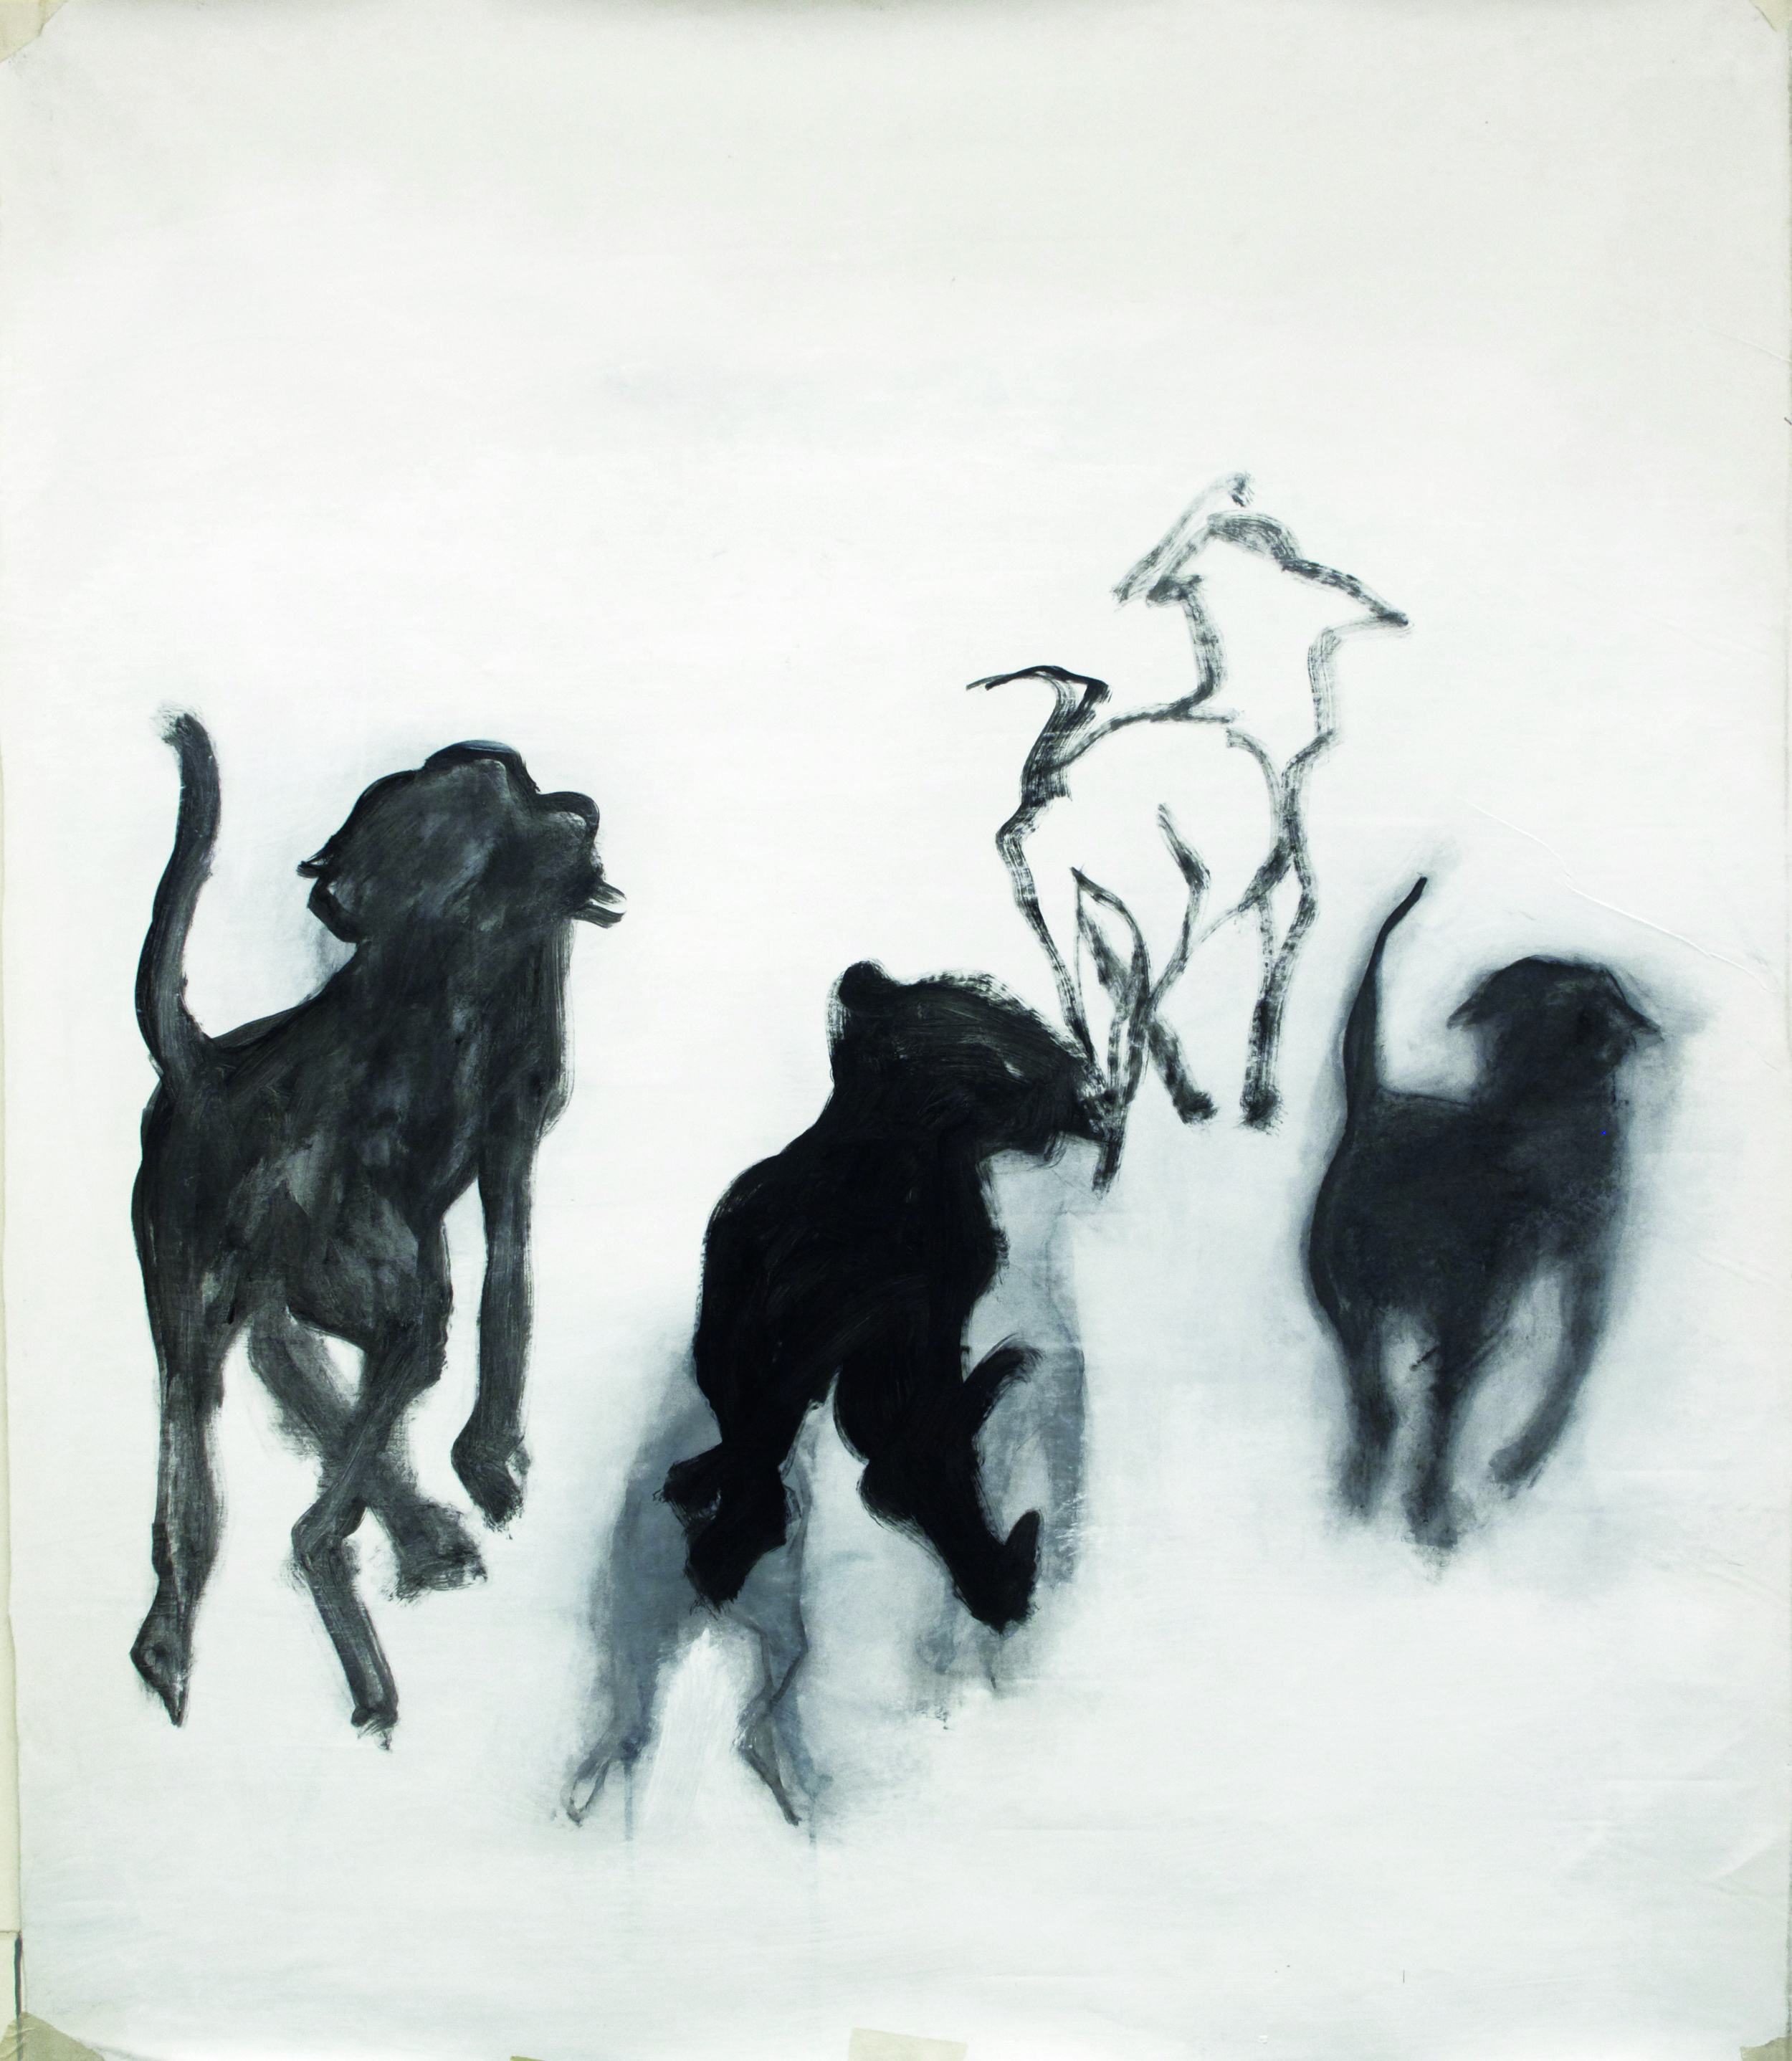  Dogs, Acrylic paint on canvas, 90 x 60 cm 